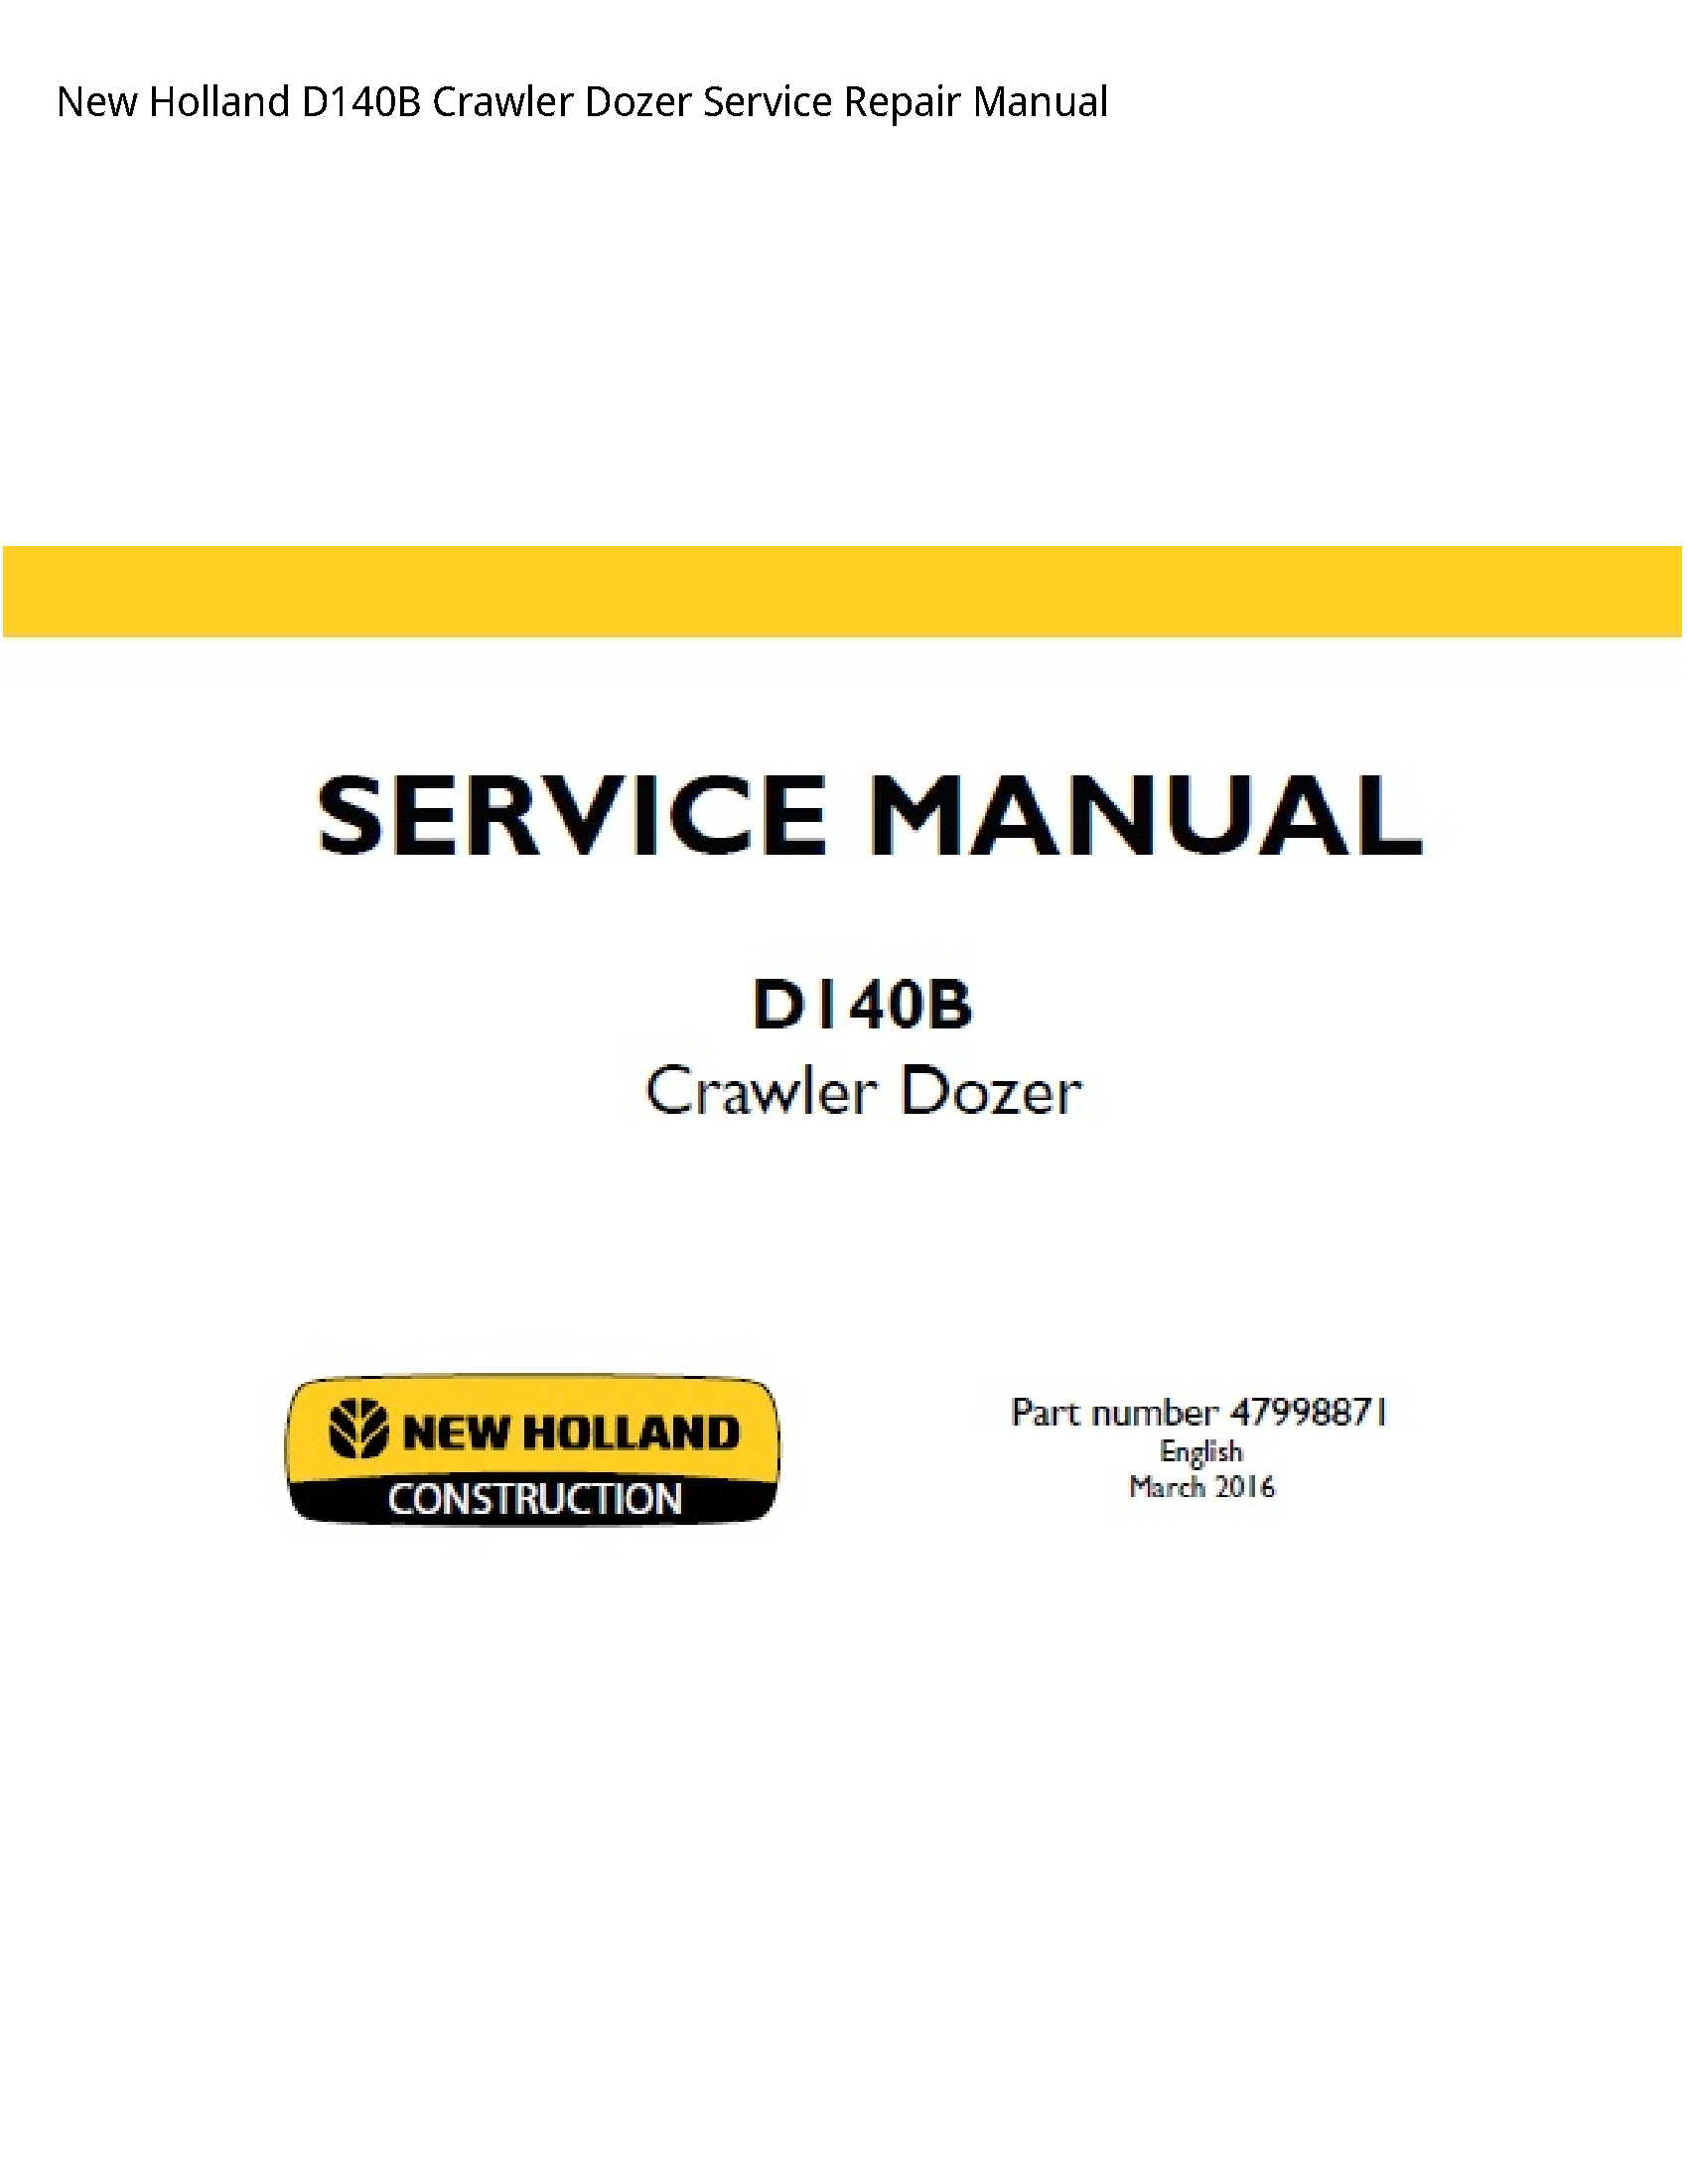 New Holland D140B Crawler Dozer manual